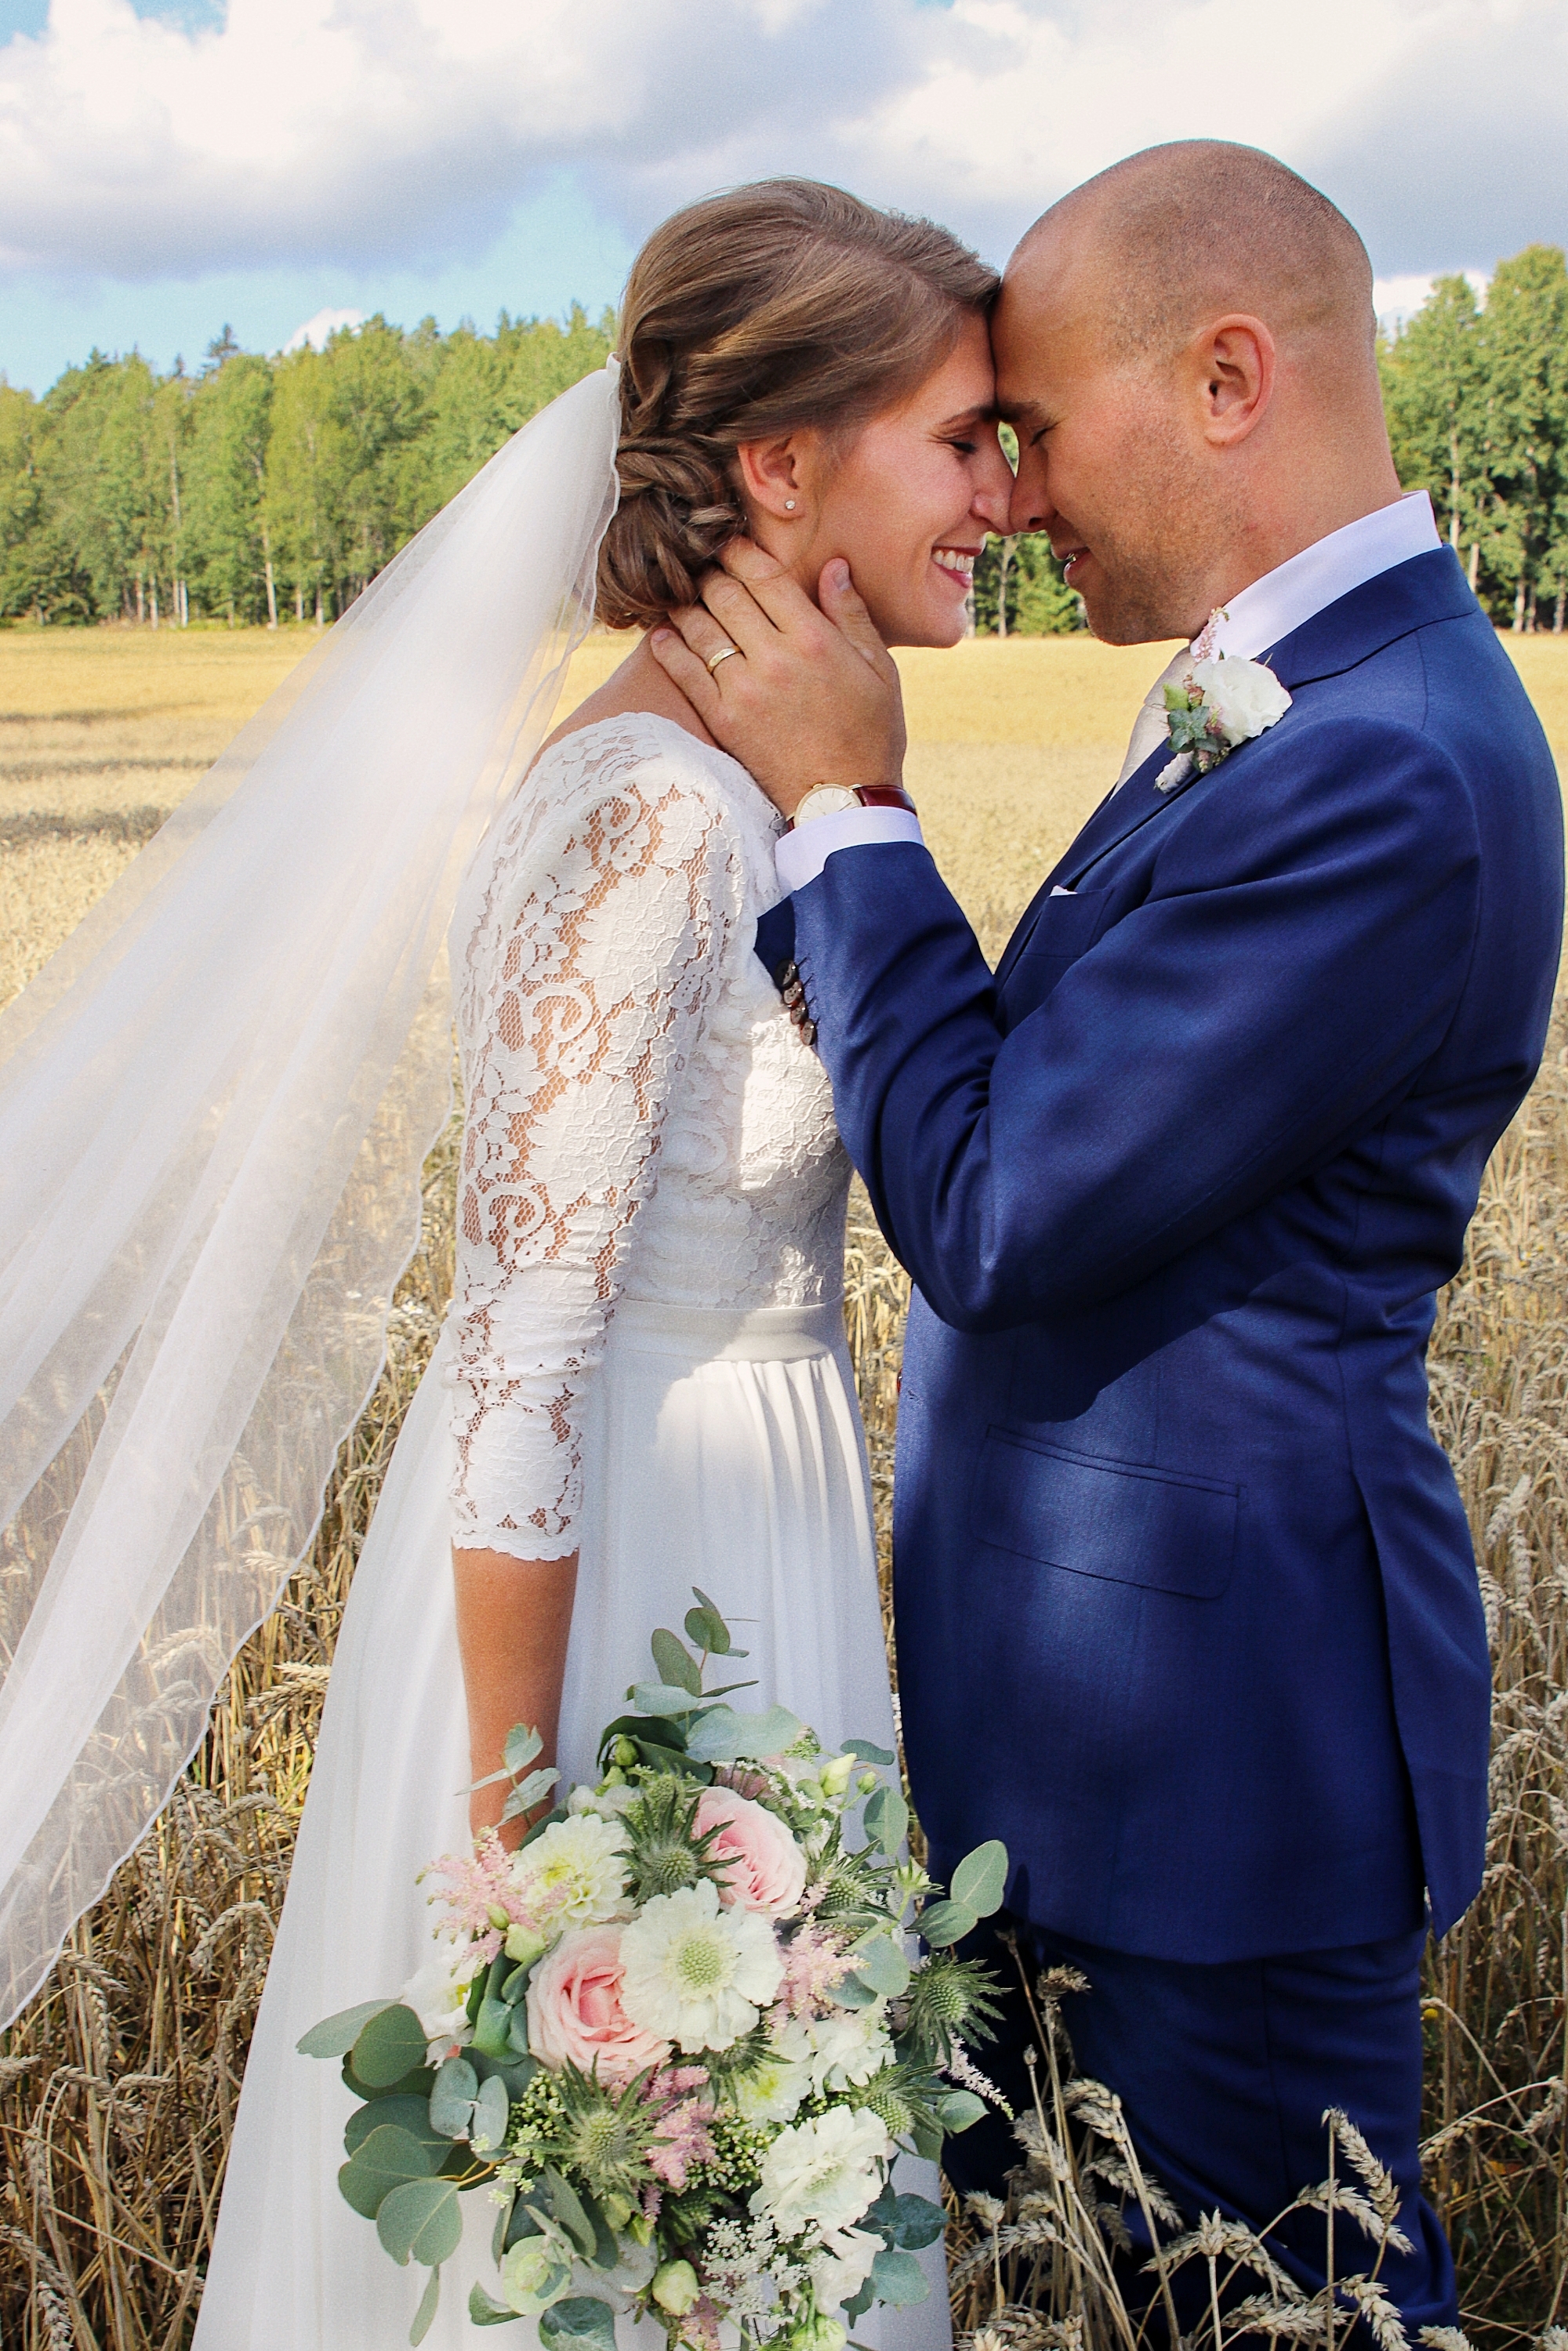 brollop wedding foto photo brud brudgum lantligt skandinaviskt bettna brudpar